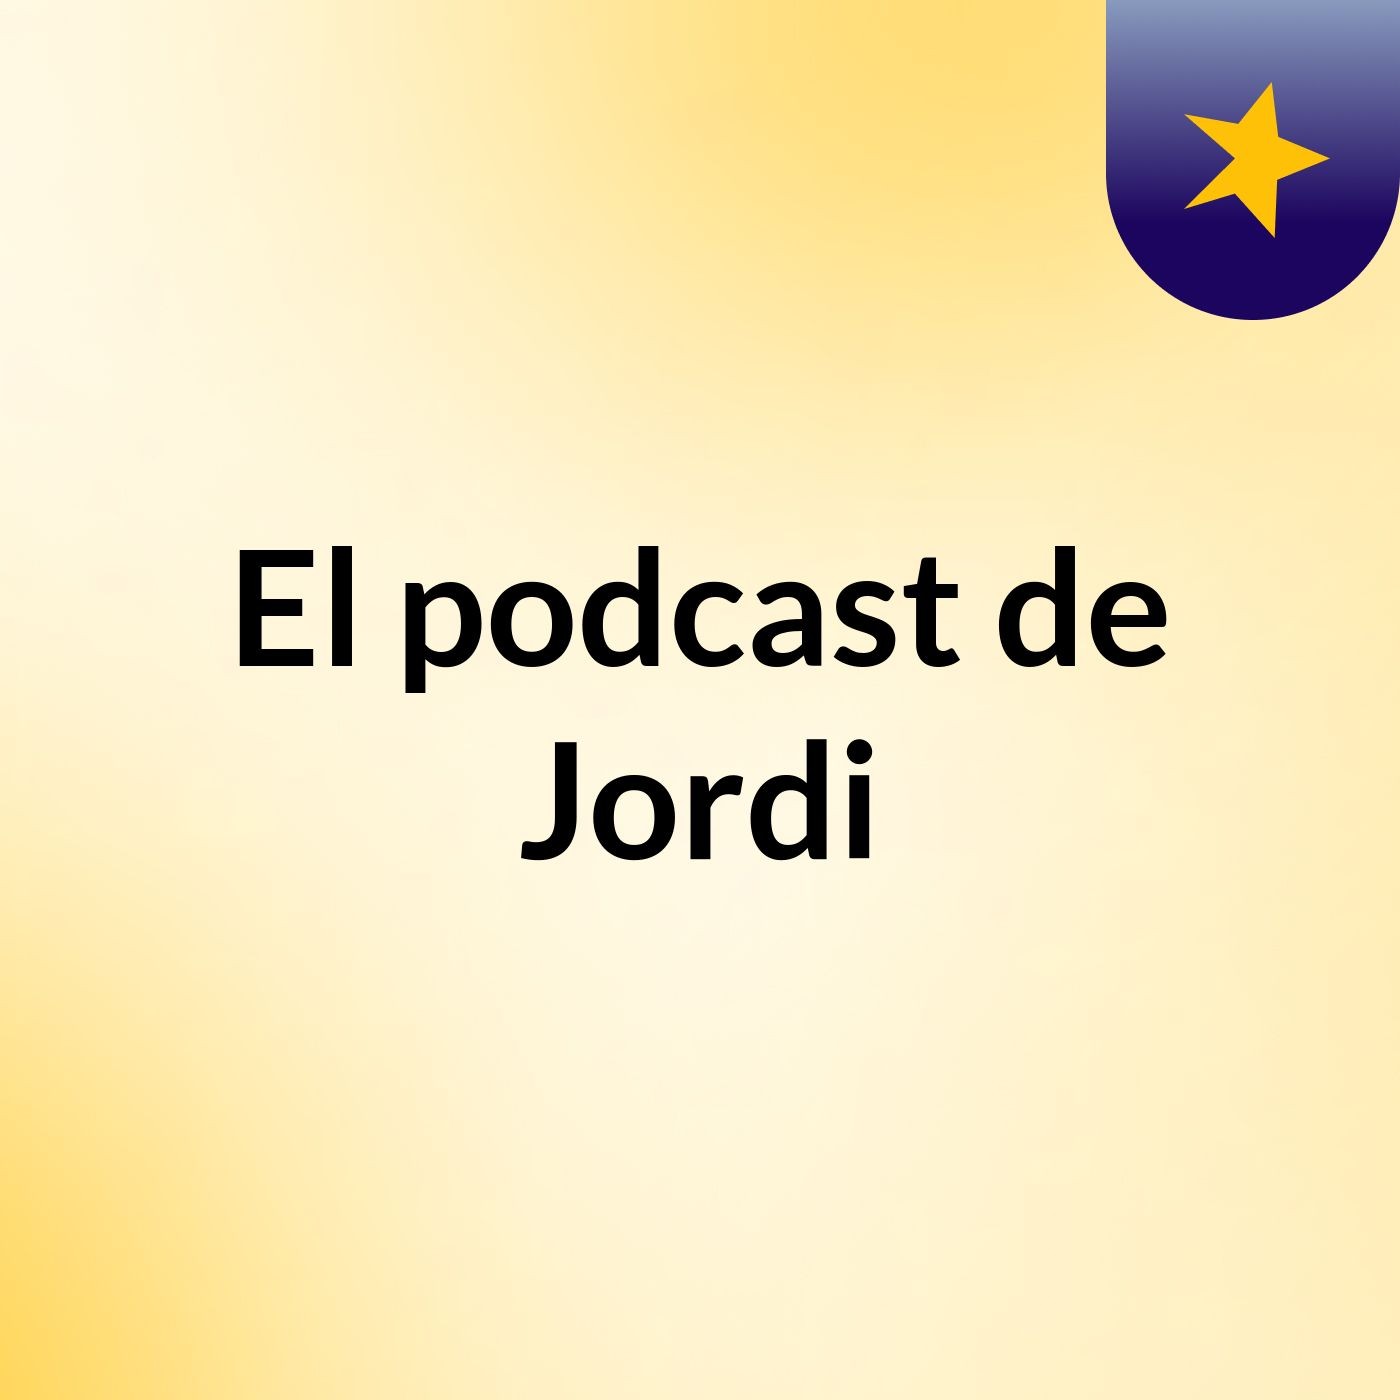 Episodio 9 - El podcast de Jordi